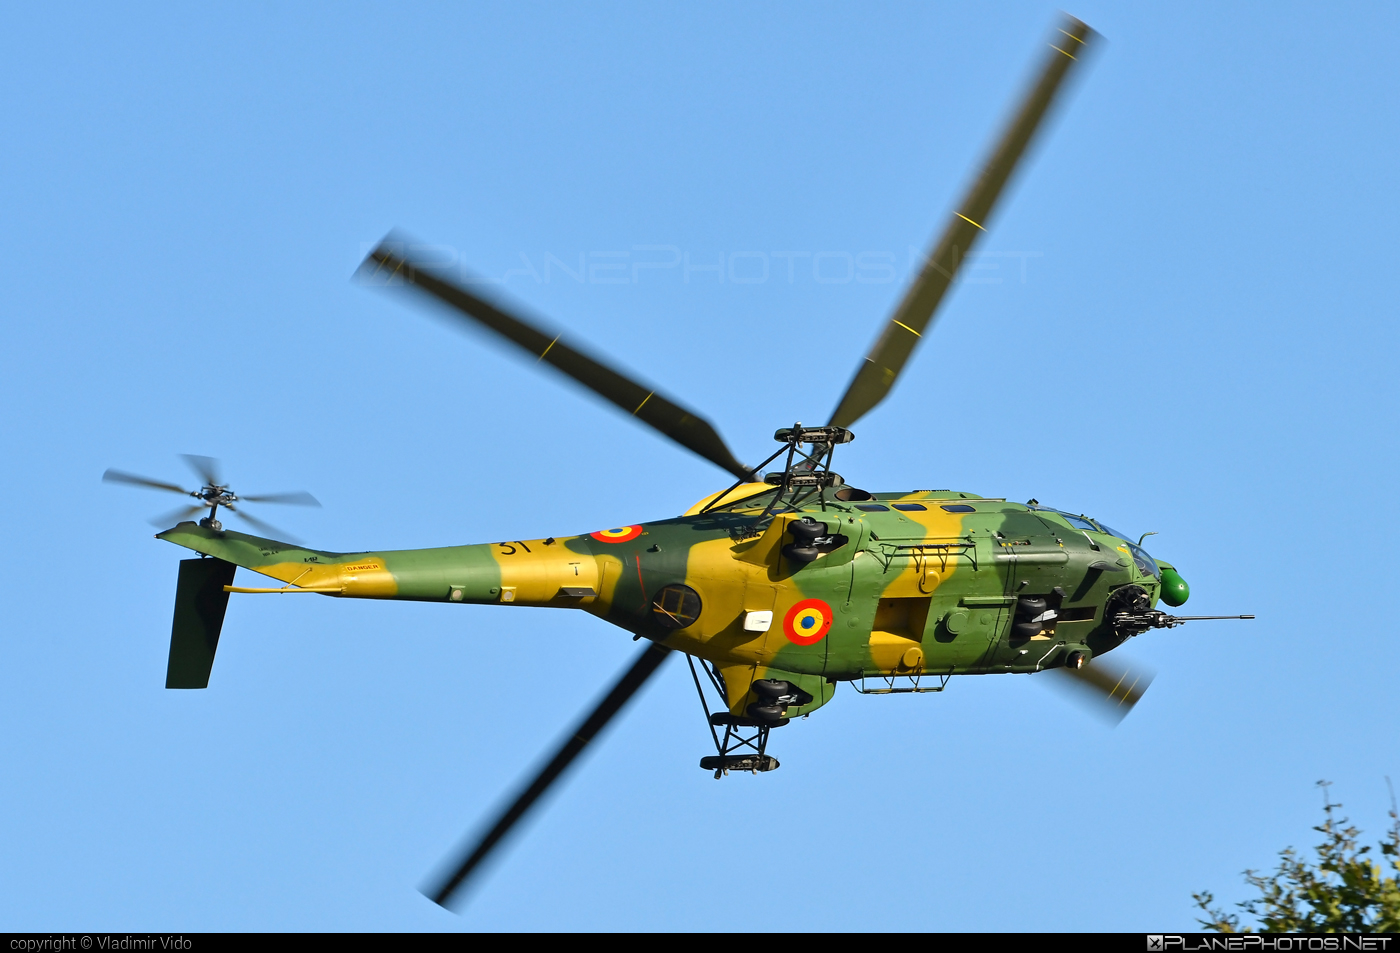 IAR 330L Puma SOCAT - 31 operated by Forţele Aeriene Române (Romanian Air Force) #forteleaerieneromane #iar #iar330 #iar330l #iar330lpuma #iar330lpumasocat #iar330puma #industriaAeronauticaRomana #romanianairforce